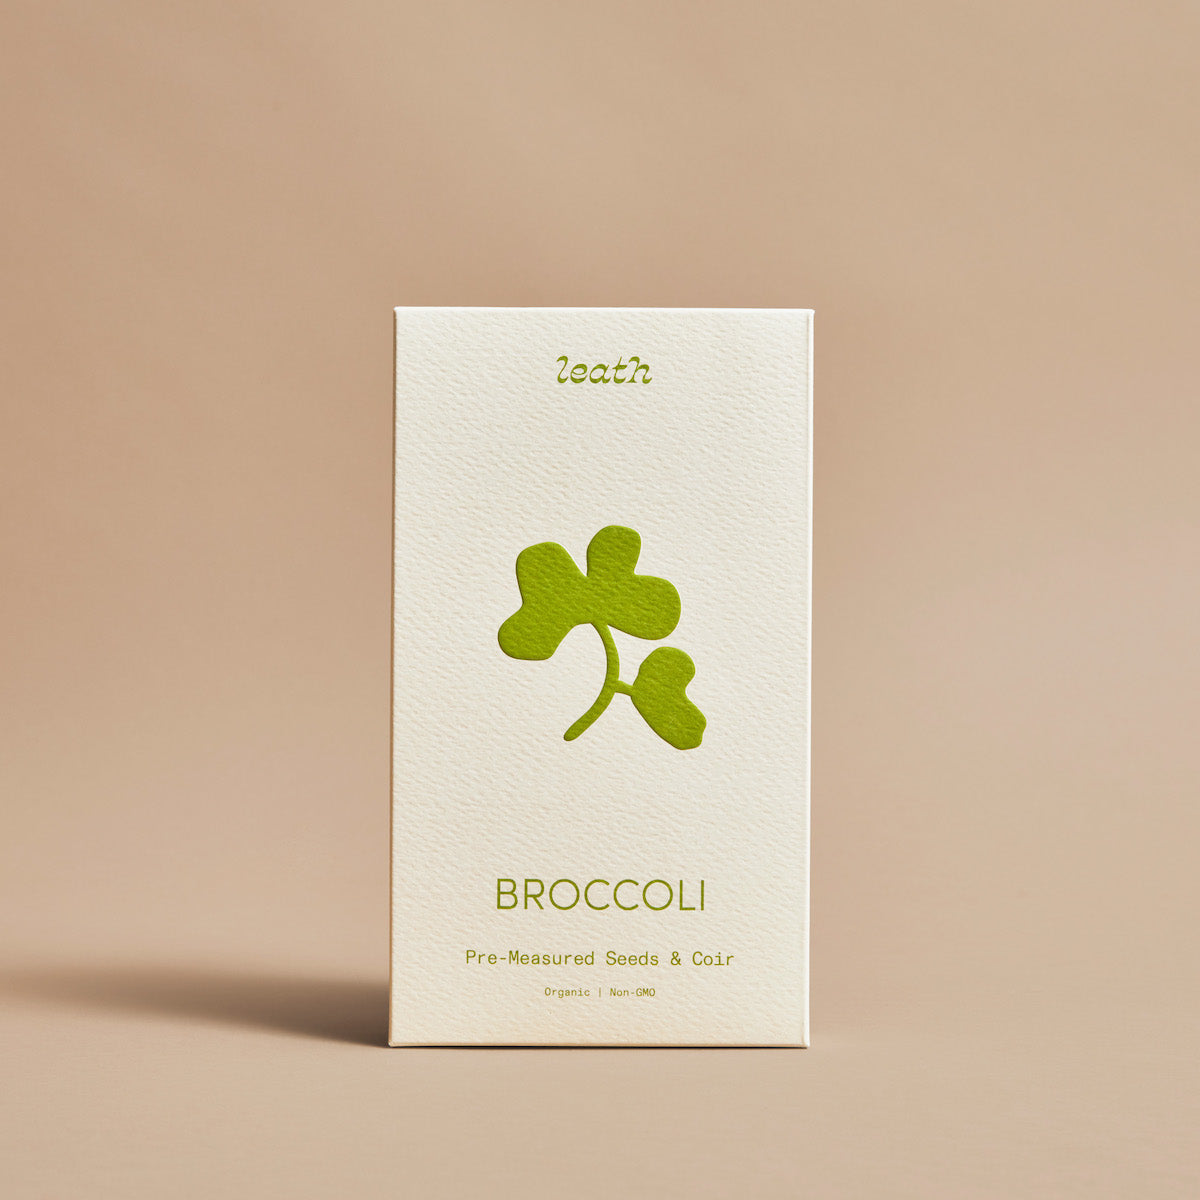 Leathlet seed & soil pack - Broccoli microgreens